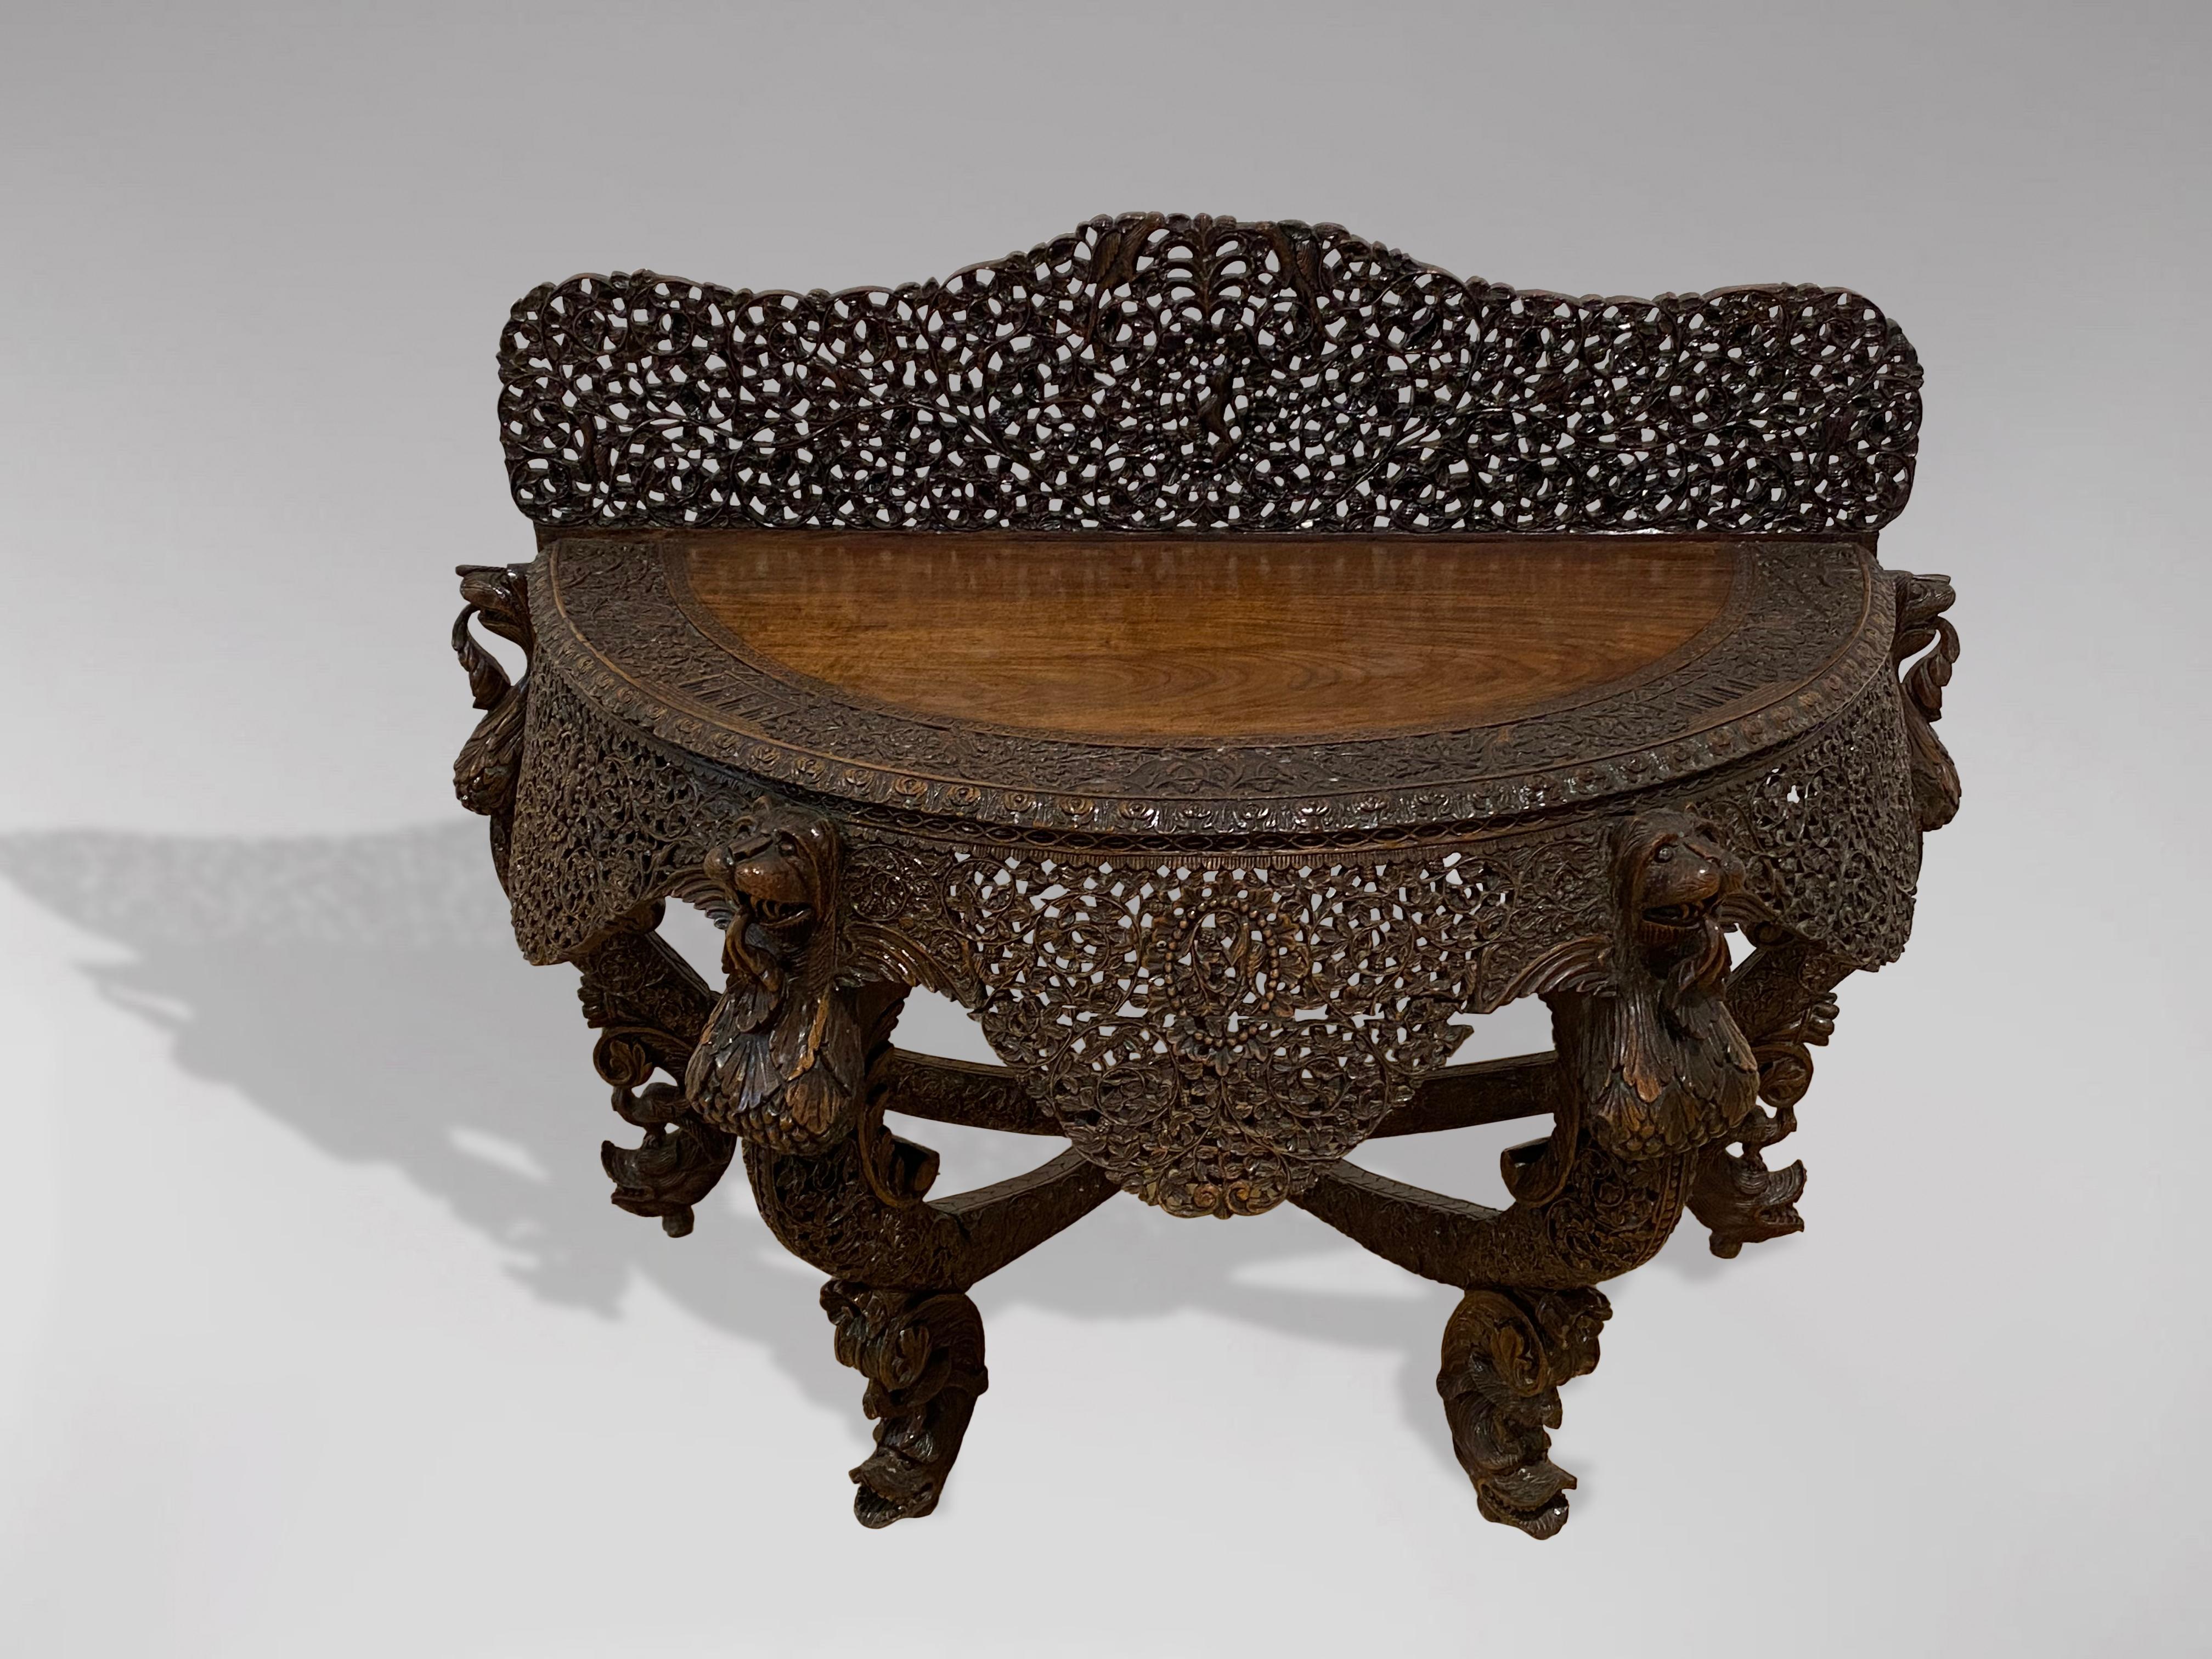 Ein schöner und sehr dekorativer Konsolentisch aus britischem Palisanderholz aus der Mitte des 19. Jahrhunderts, der von vier reich geschnitzten Beinen getragen wird, die an der Tischplatte in mythischen Tiergesichtern enden. Die Platte besteht aus